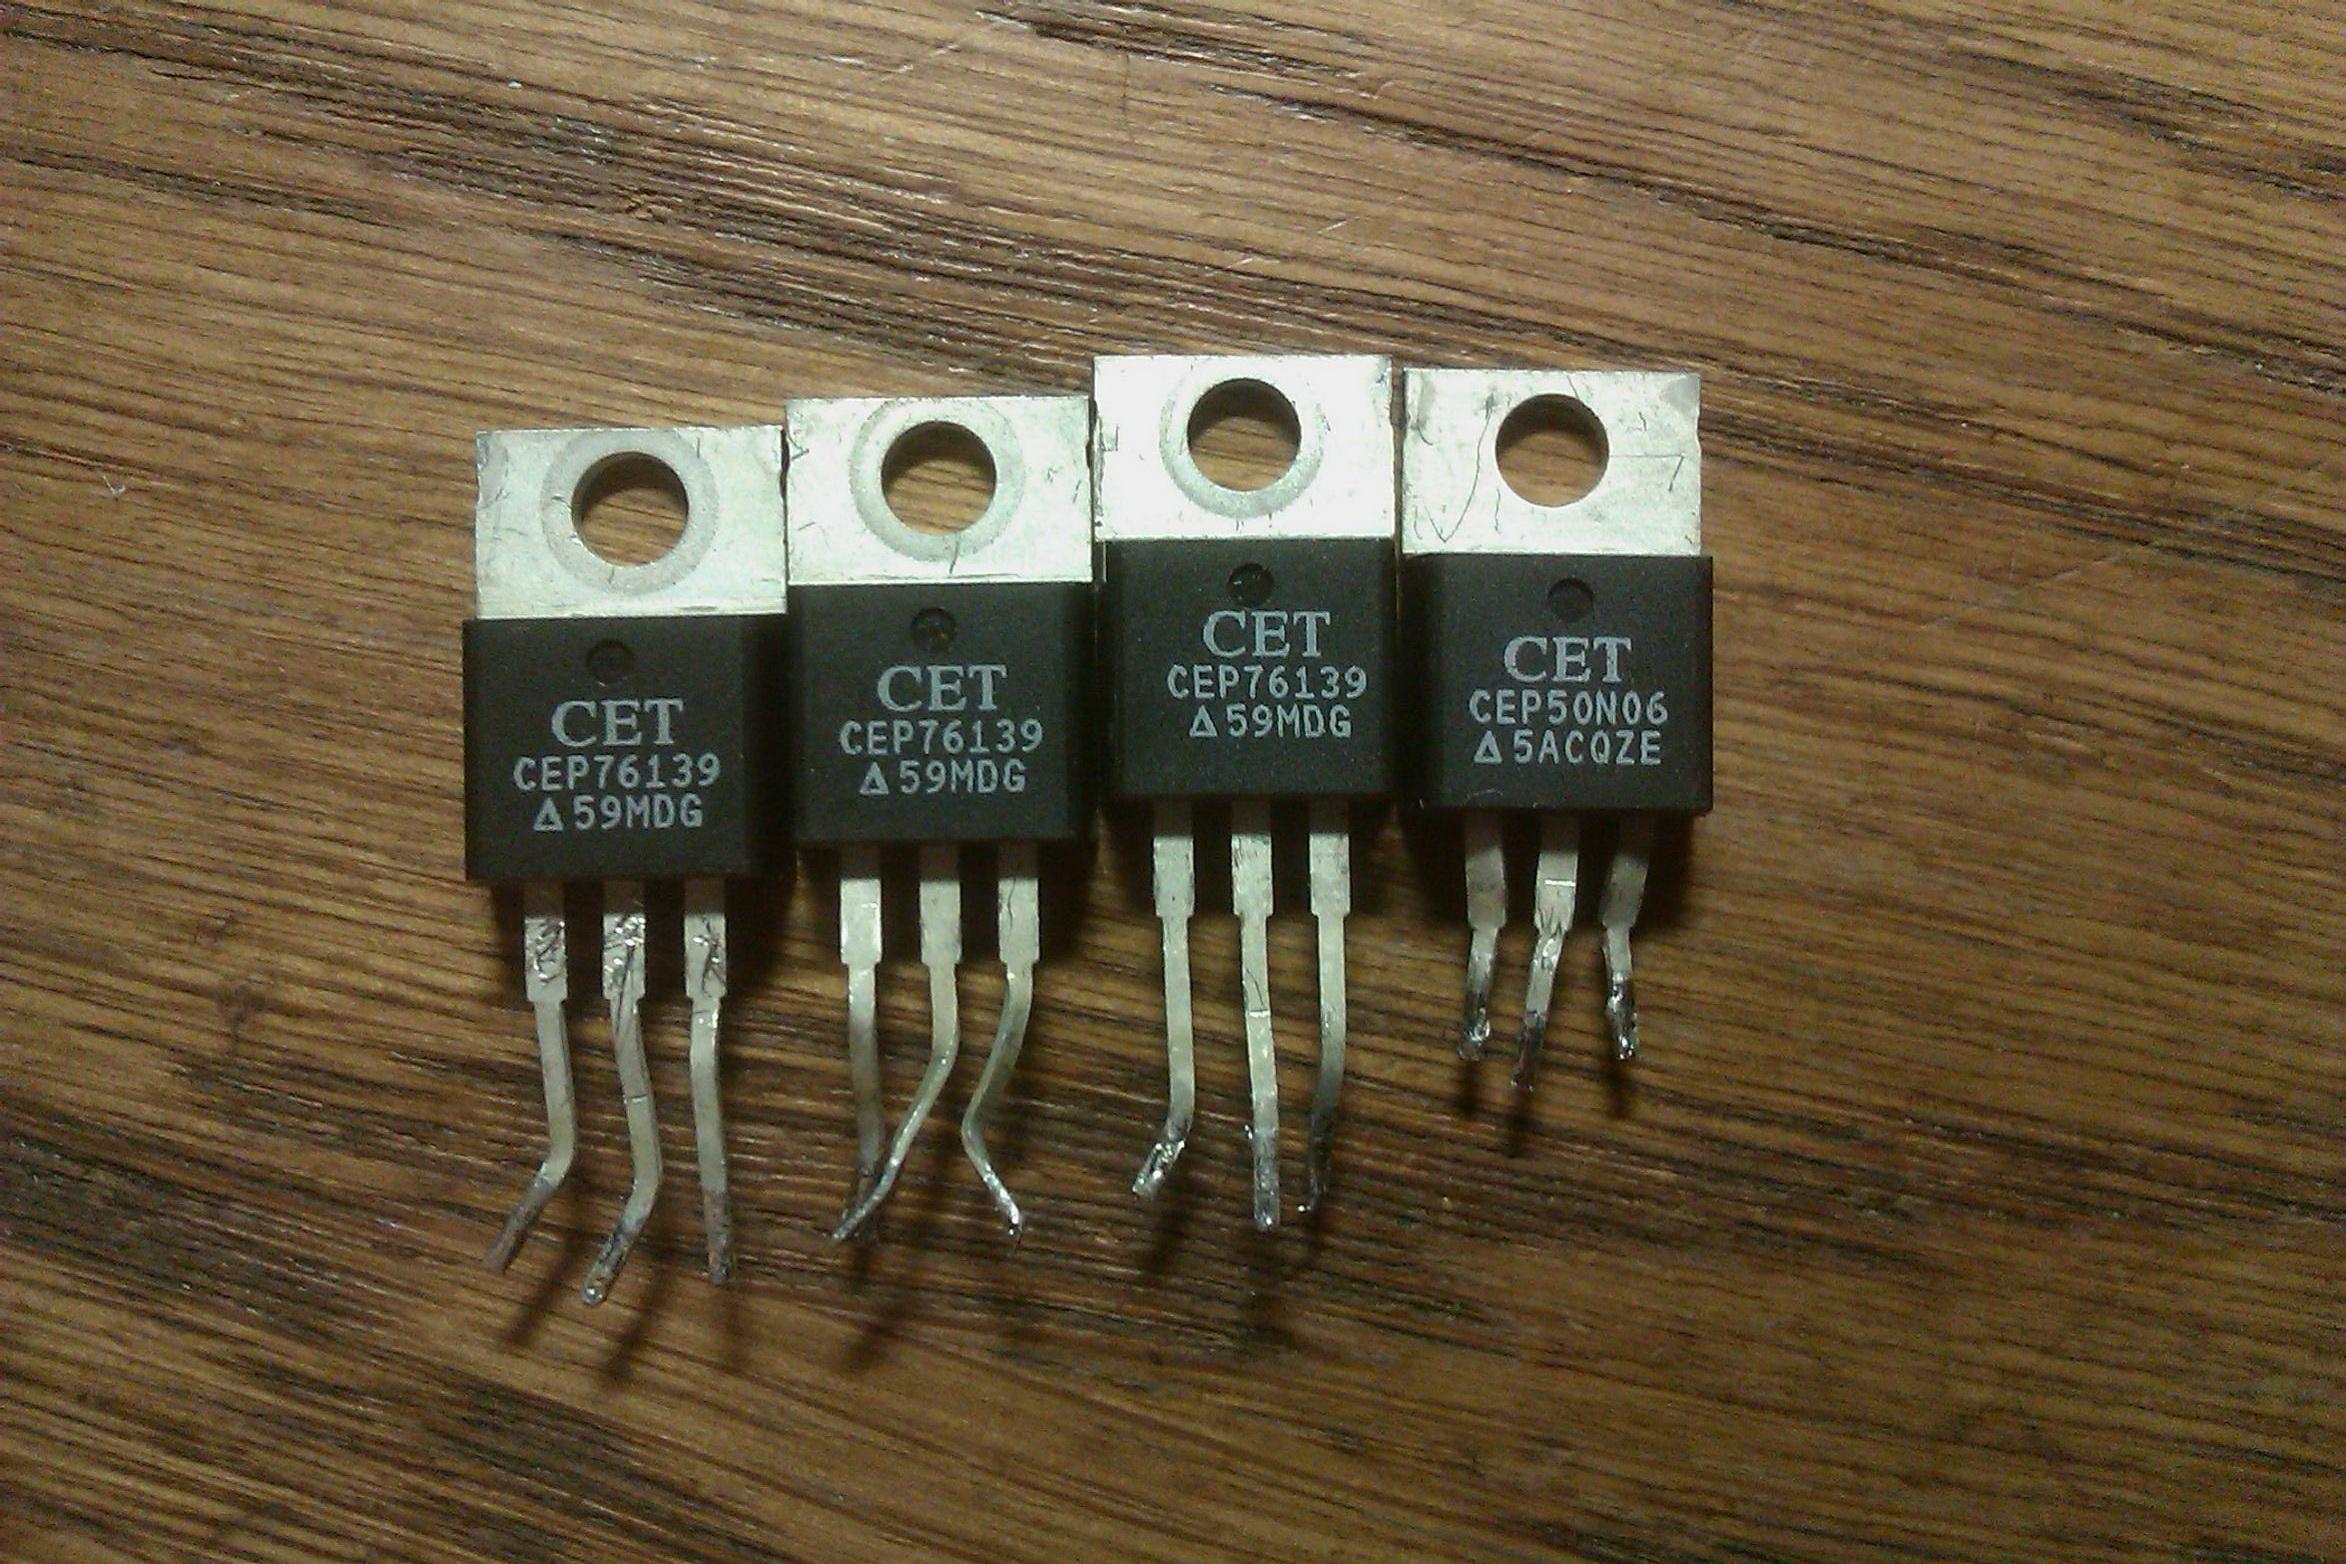 Пятьдесят n. Cep50n06 транзистор. Транзистор 50n06 даташит. 2n0609 транзистор. Полевой транзистор 50n06.